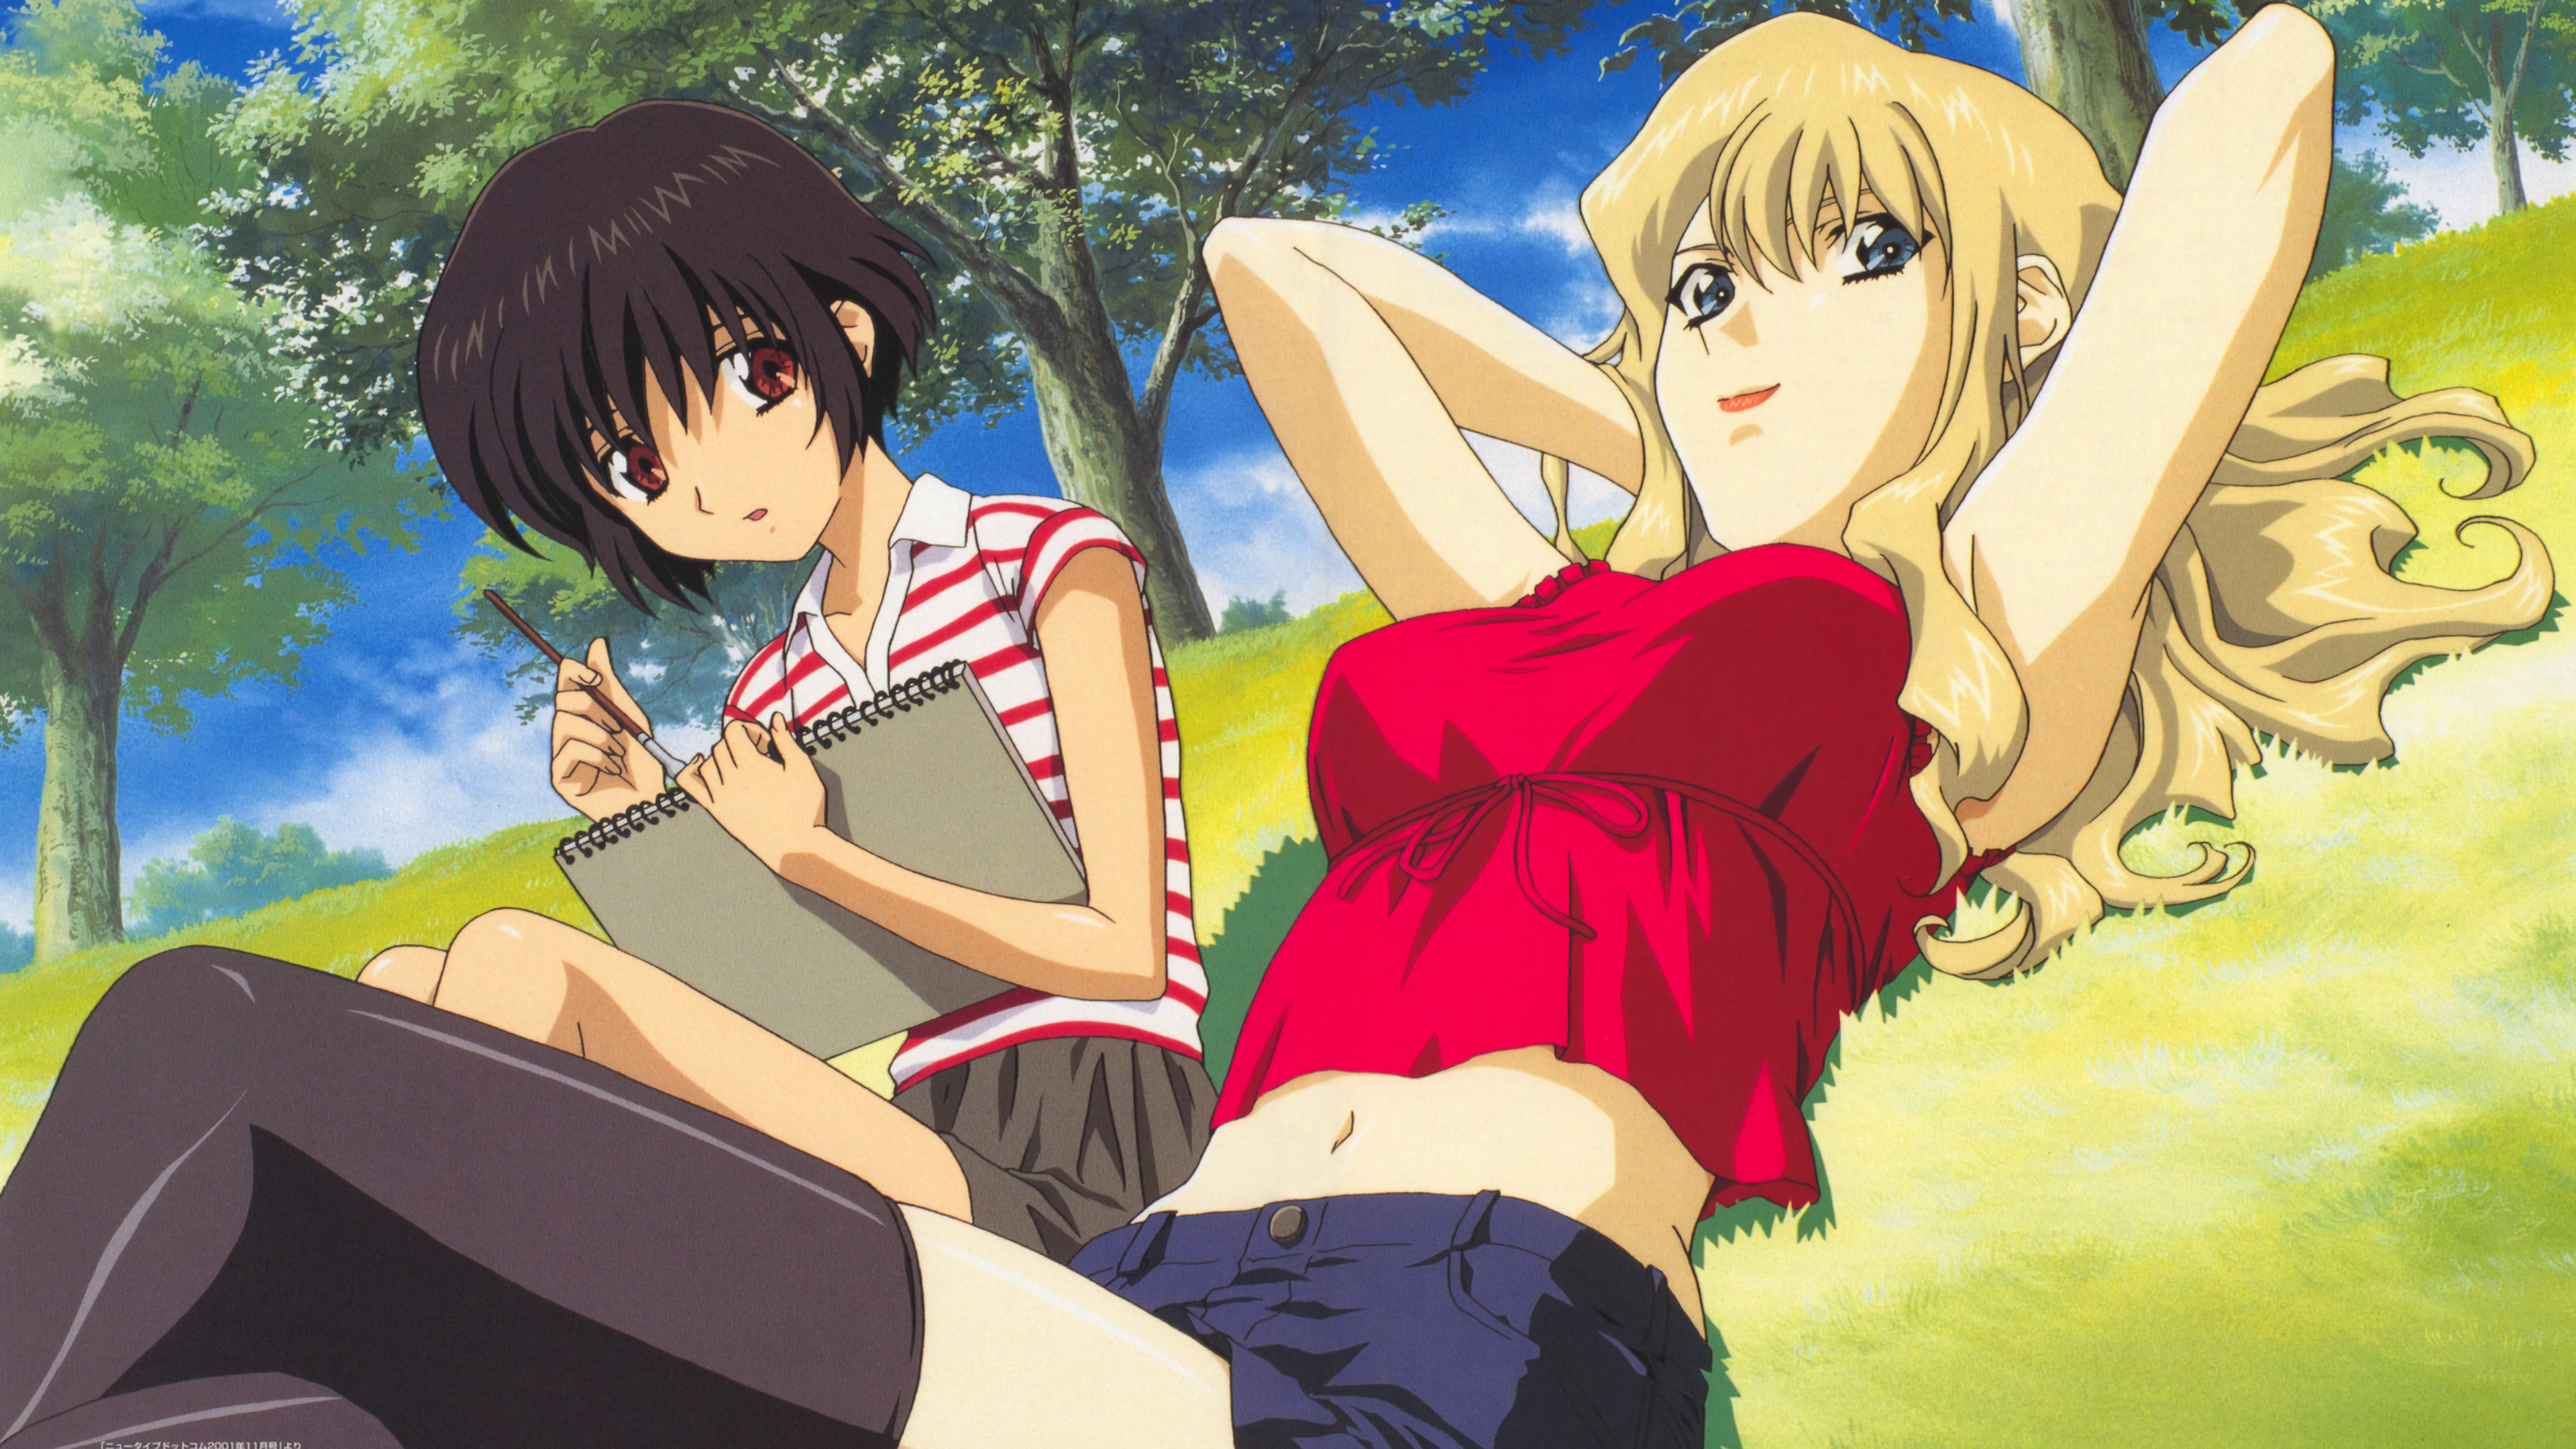 Noir Anime Kirika Yuumura Mireille Bouquet Grass Trees Clouds Sky Anime Girls 3840x2160